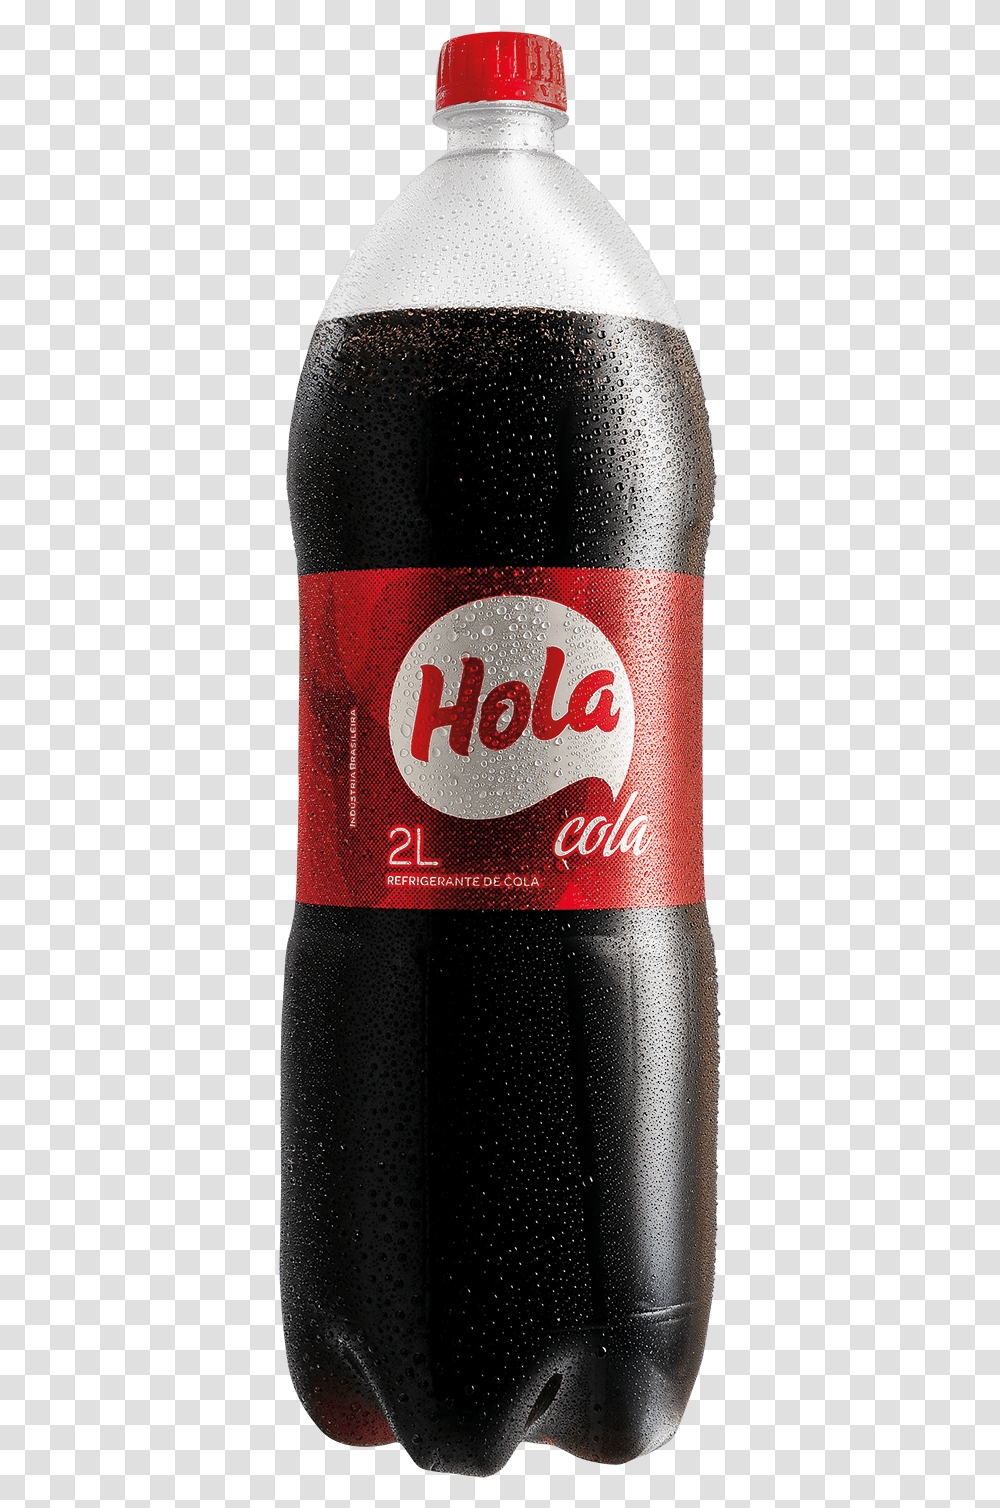 Hola Cola Mockup Refrigerante Hola, Soda, Beverage, Drink, Coke Transparent Png